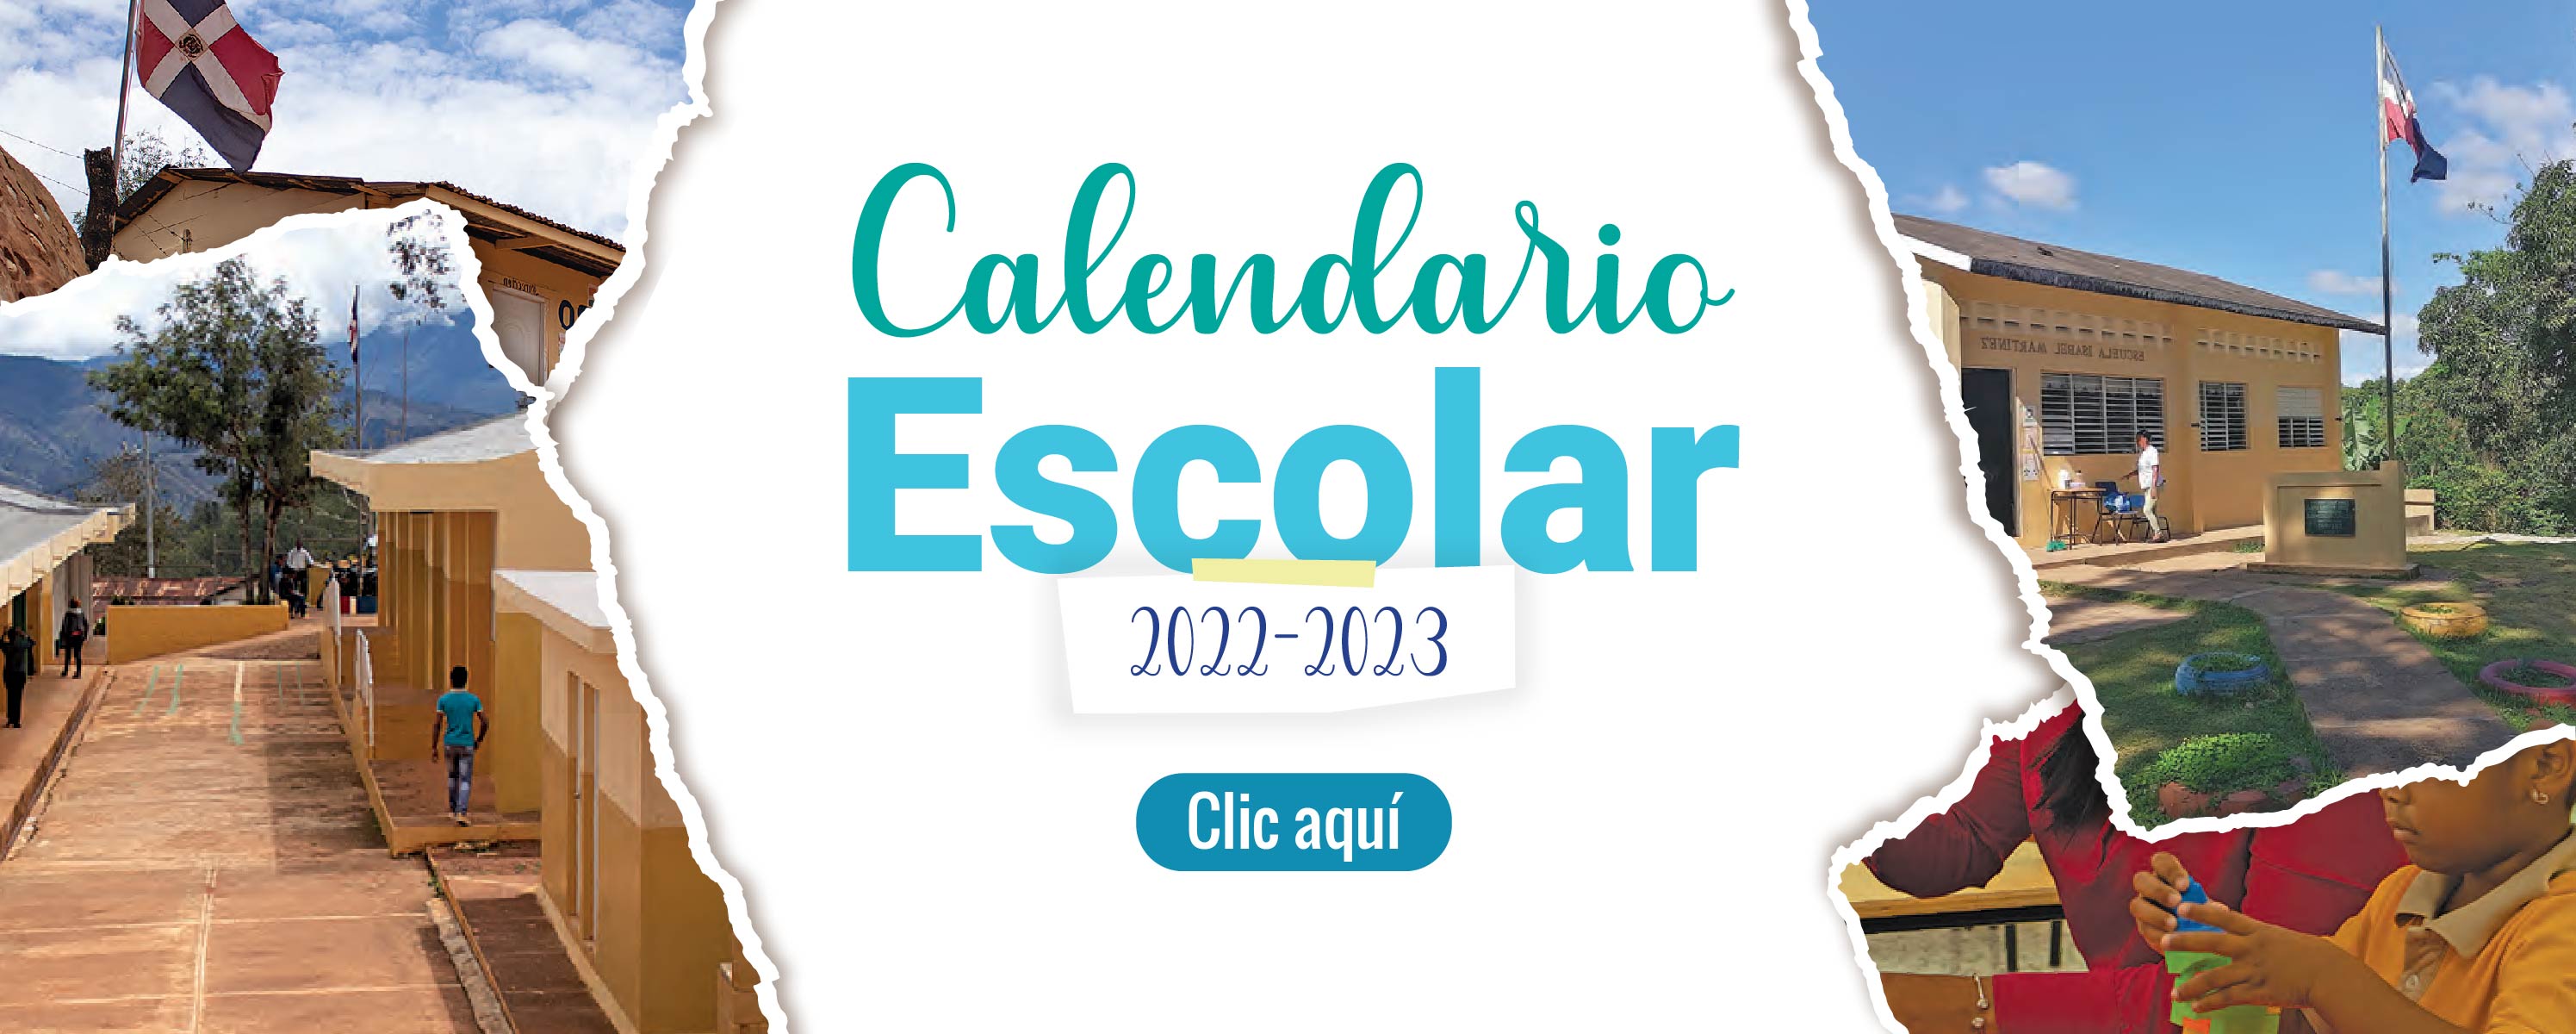 Calendario Escolar 2022-2023